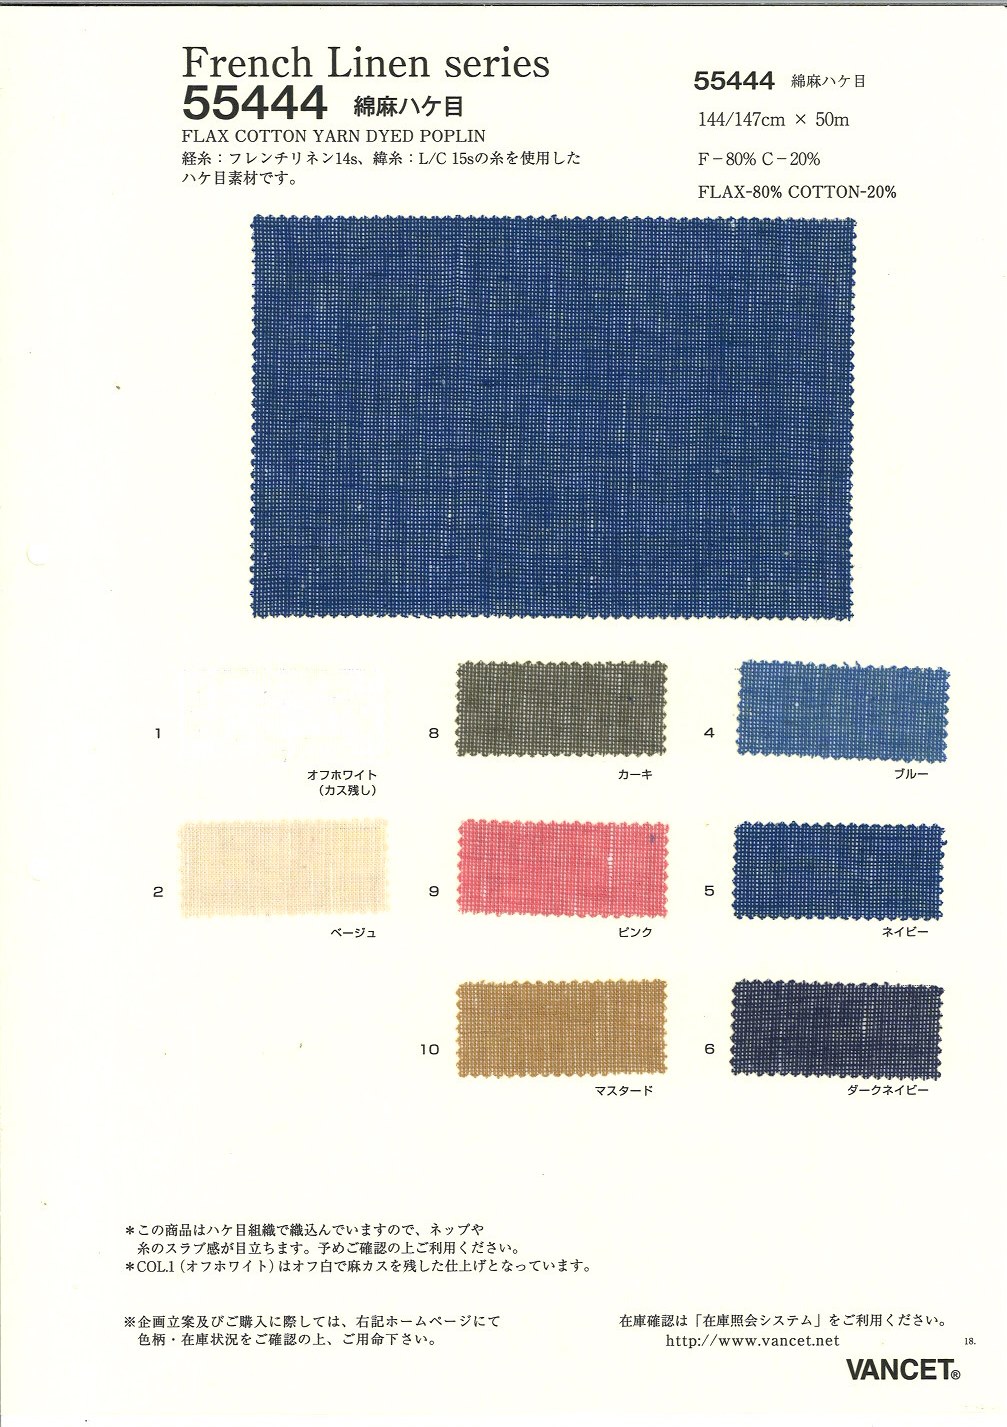 55444 Lino Francés Serie L/C Cepillado[Fabrica Textil] VANCET